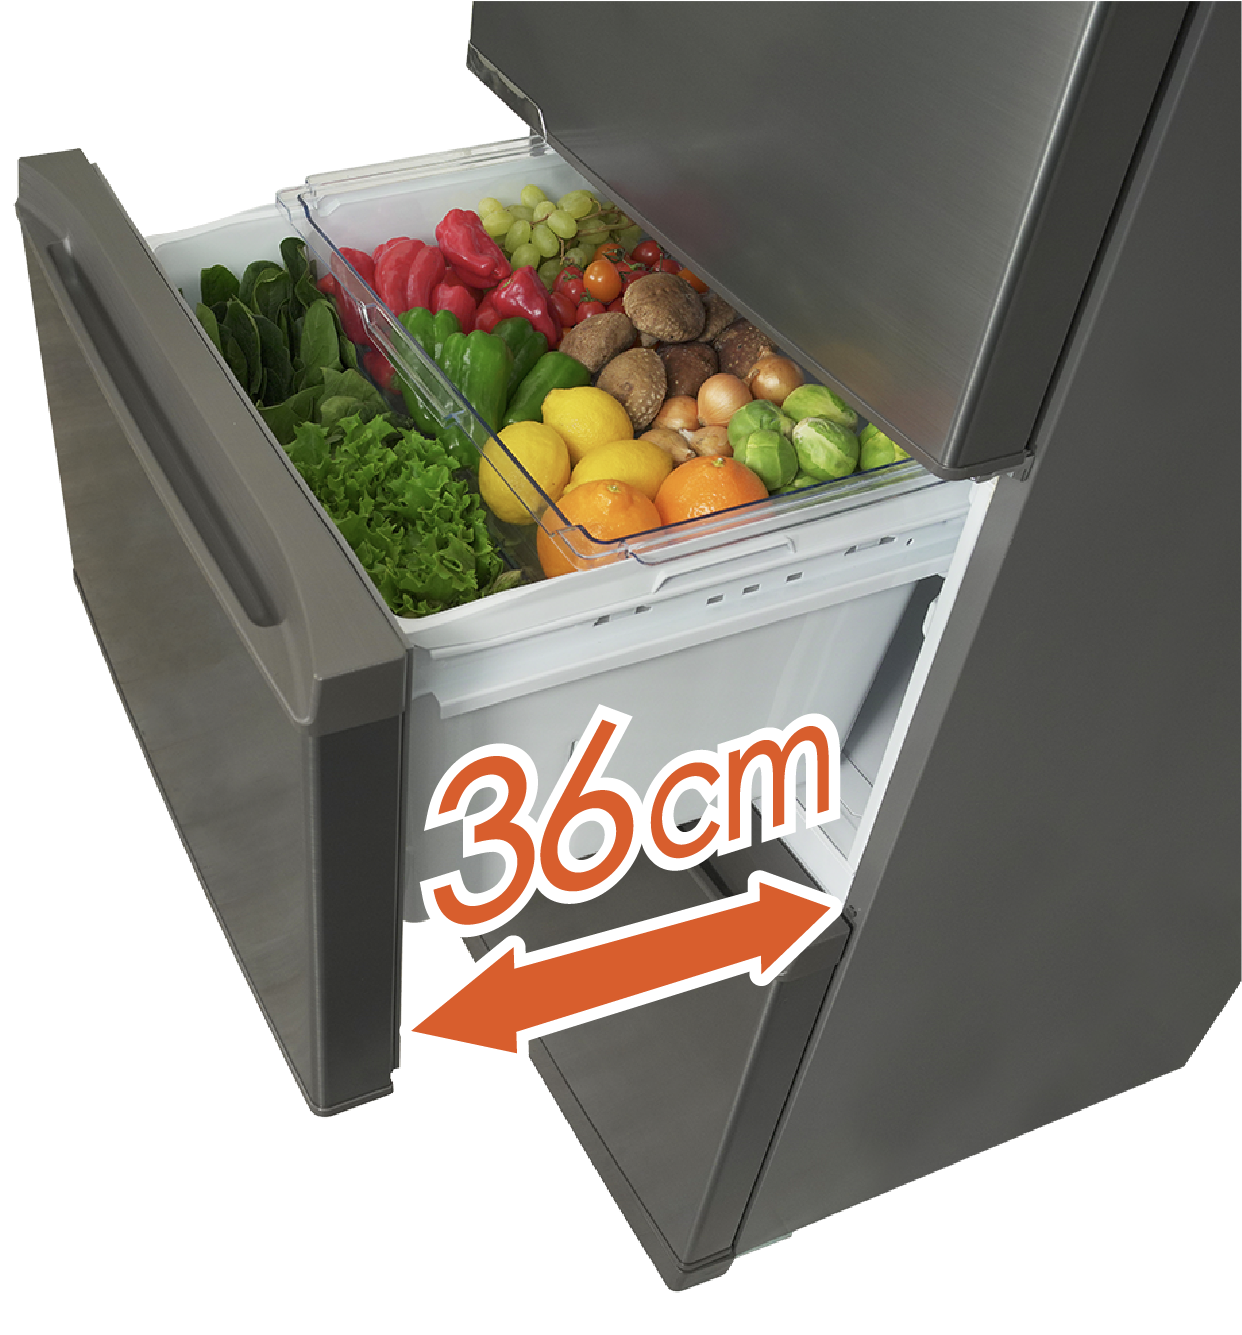 360L HR-D3601S 冷凍冷蔵庫 | ハイセンスジャパン株式会社